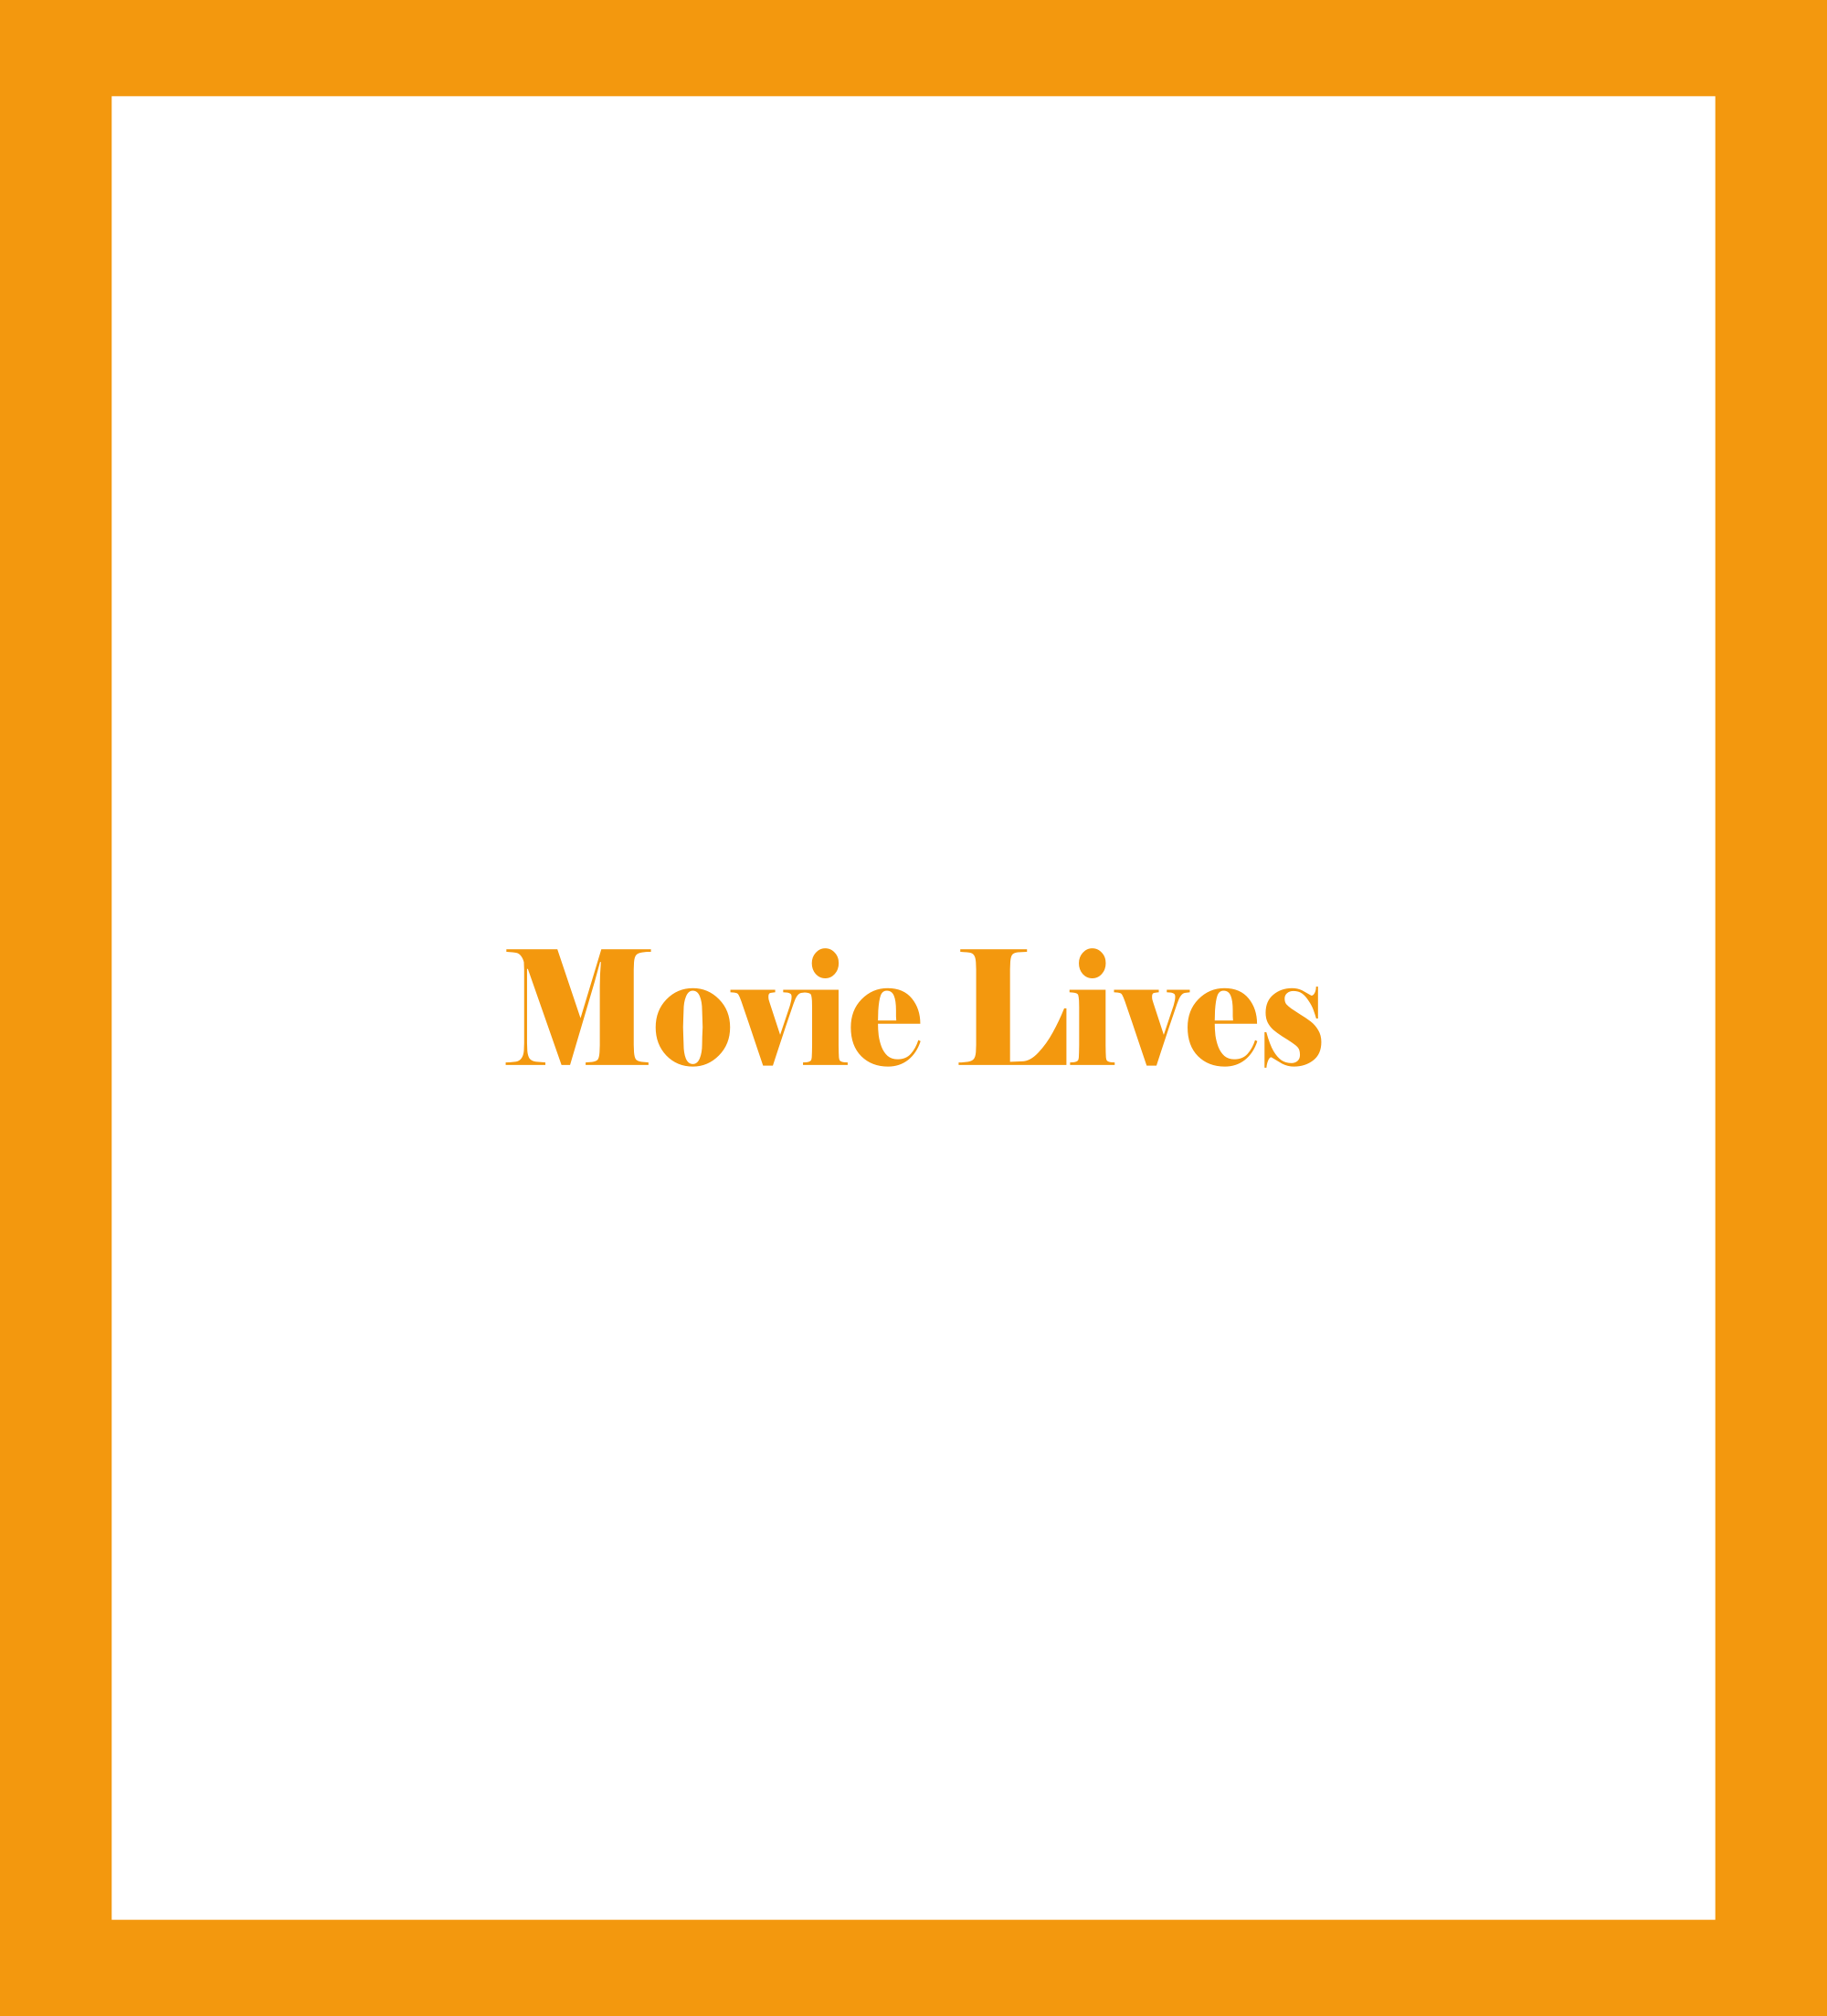 Caratula de Movie Lives (Vidas de cine) 